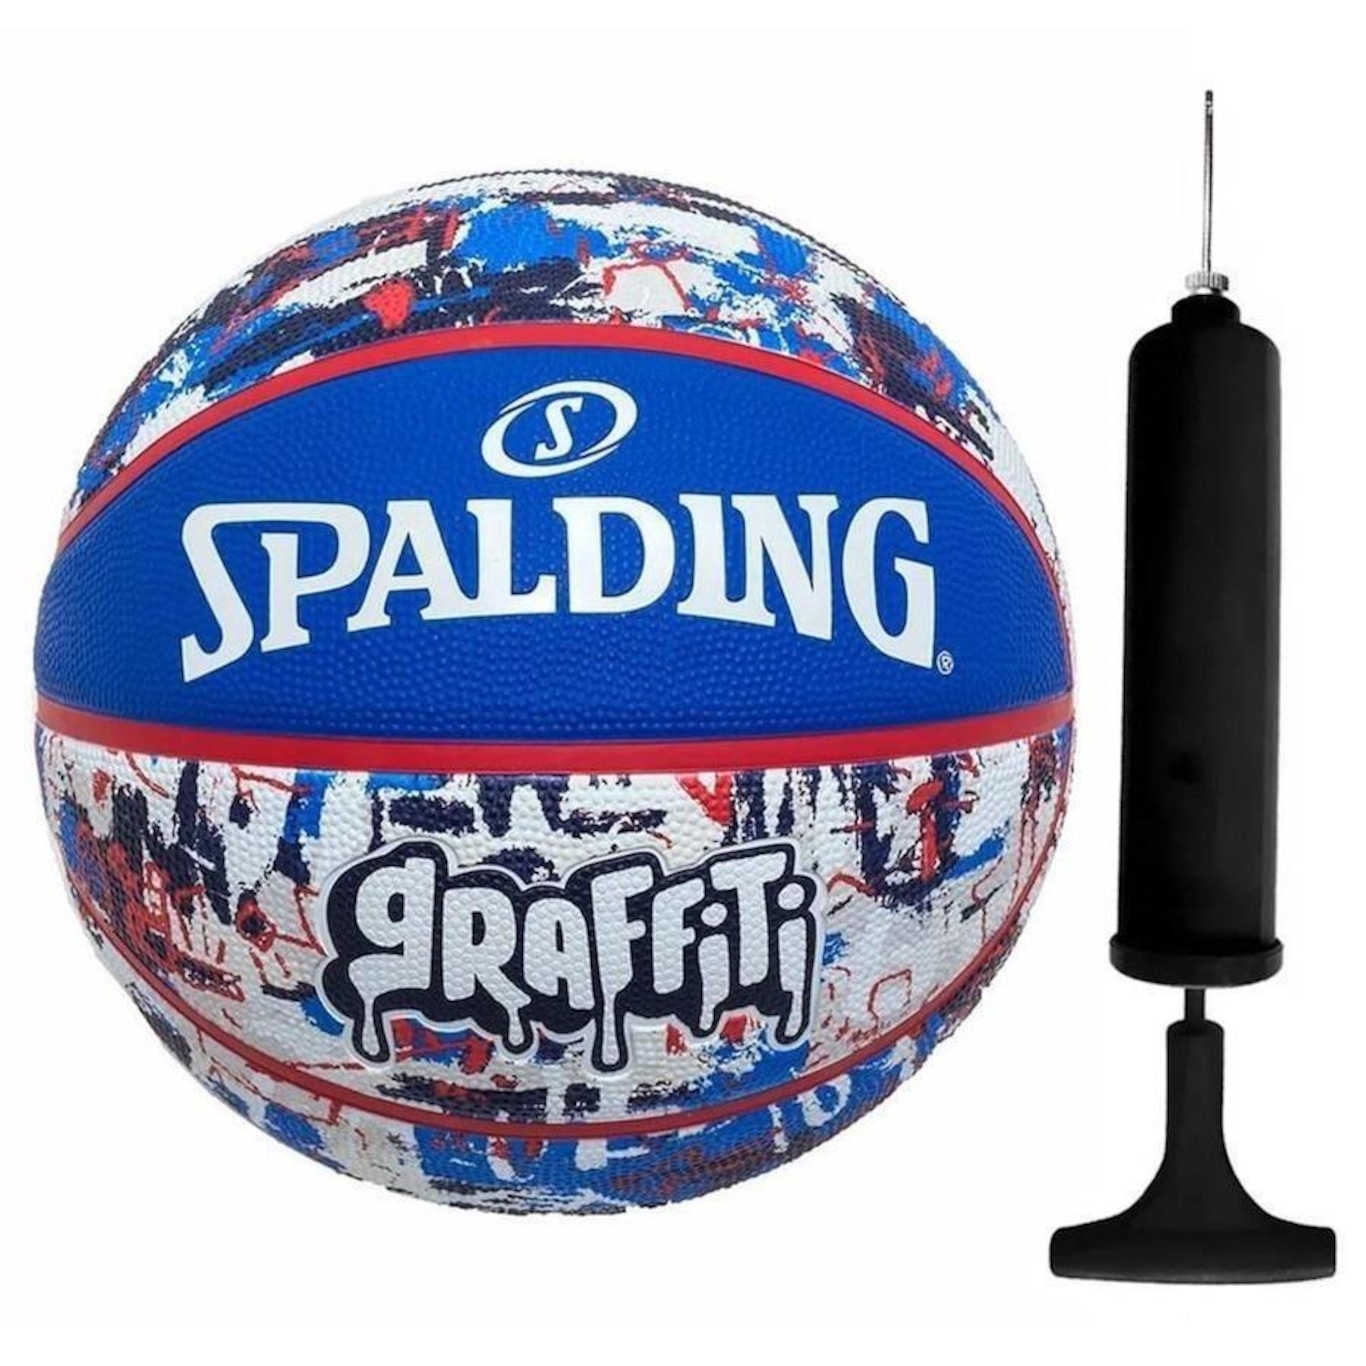 Kit Bola Basquete Spalding Highlight + Bomba de Ar - EsporteLegal